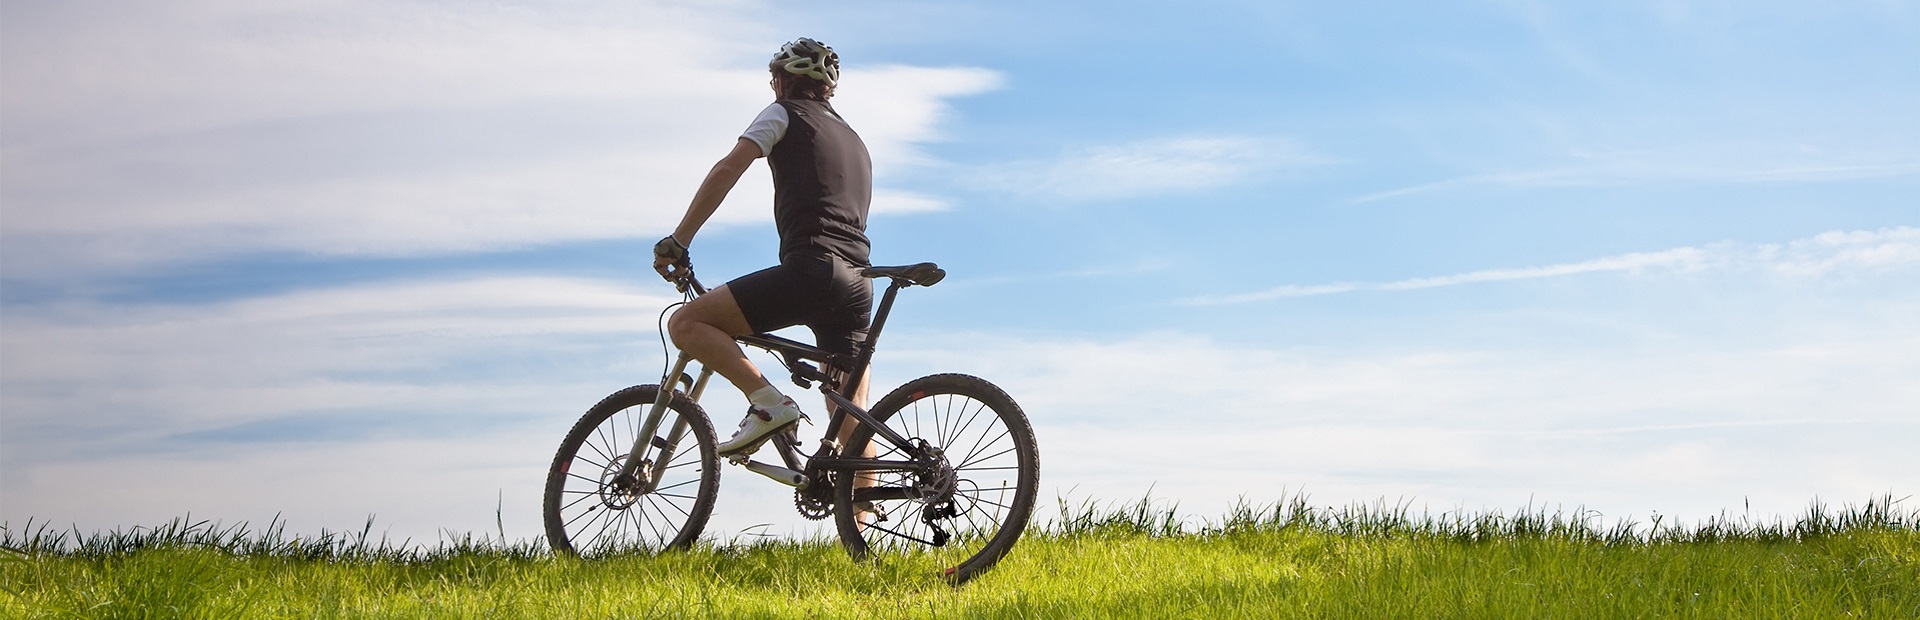 Stojący samotny rowerzysta na mazurskim polu, wśród bujnej zielonej trawy.   